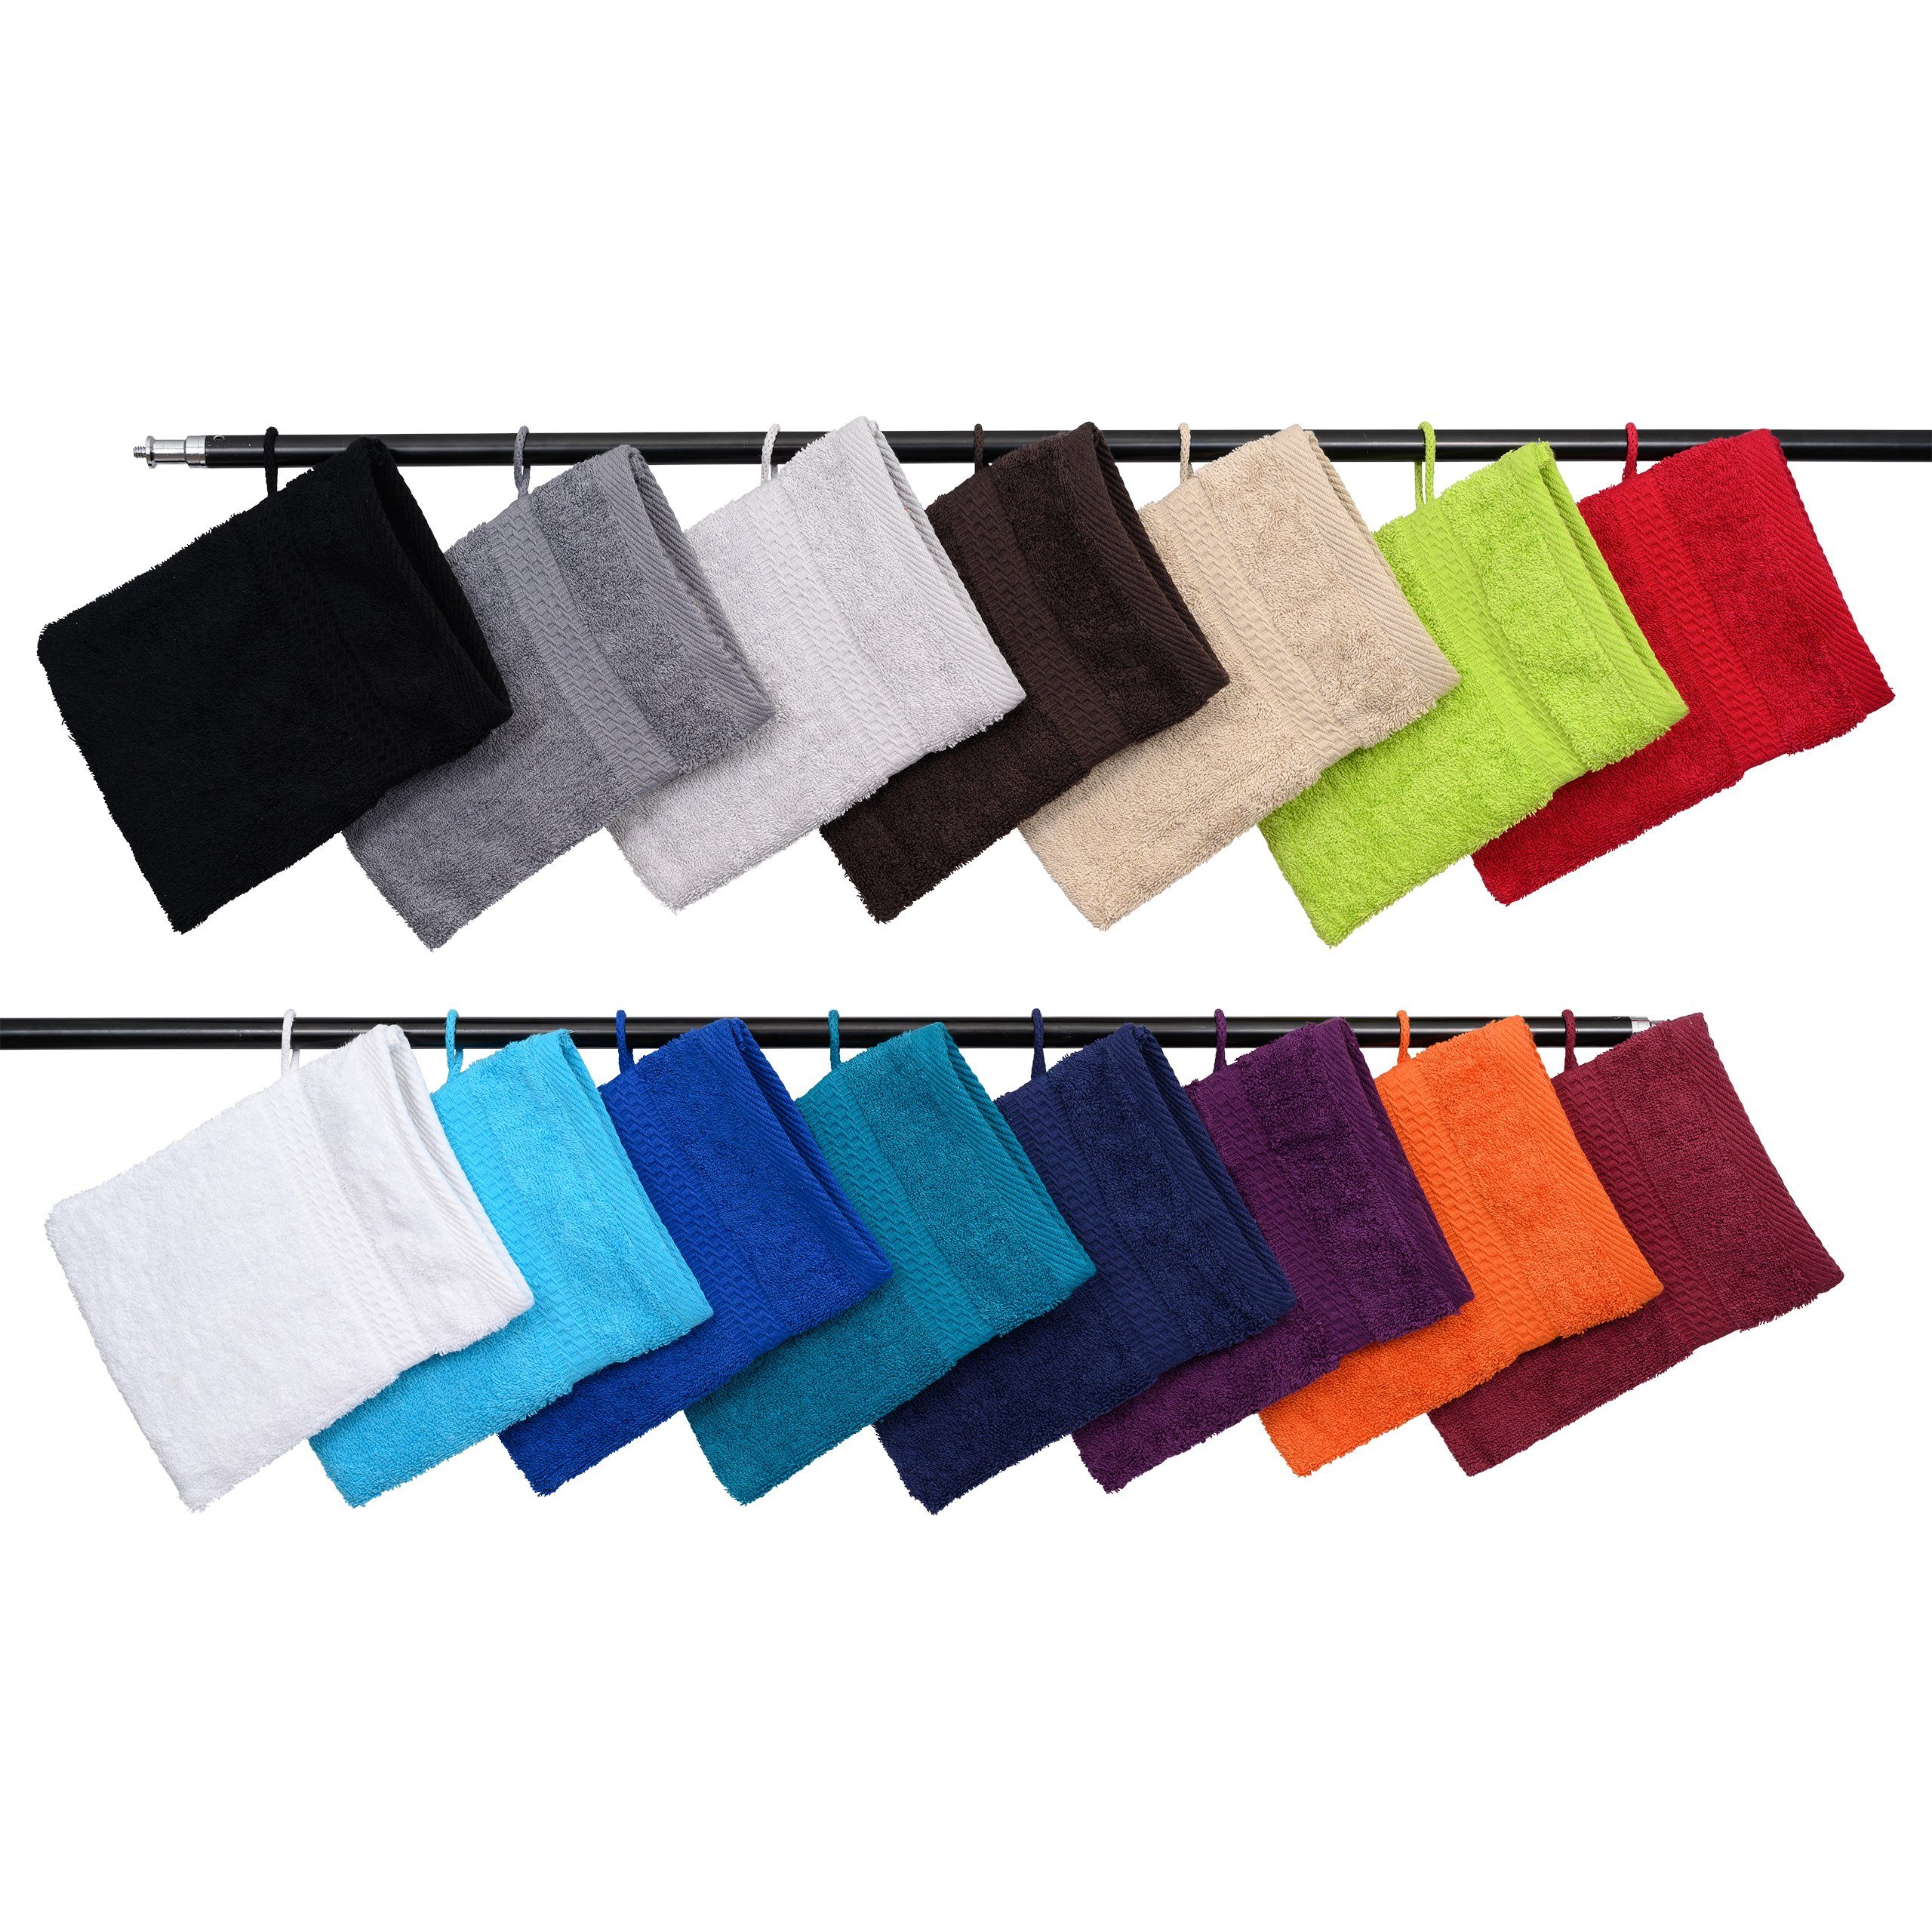 Hometex Premium Textiles Waschhandschuh Waschhandschuh in vielen verschiedenen Farben & im praktischen 10er Set Beige